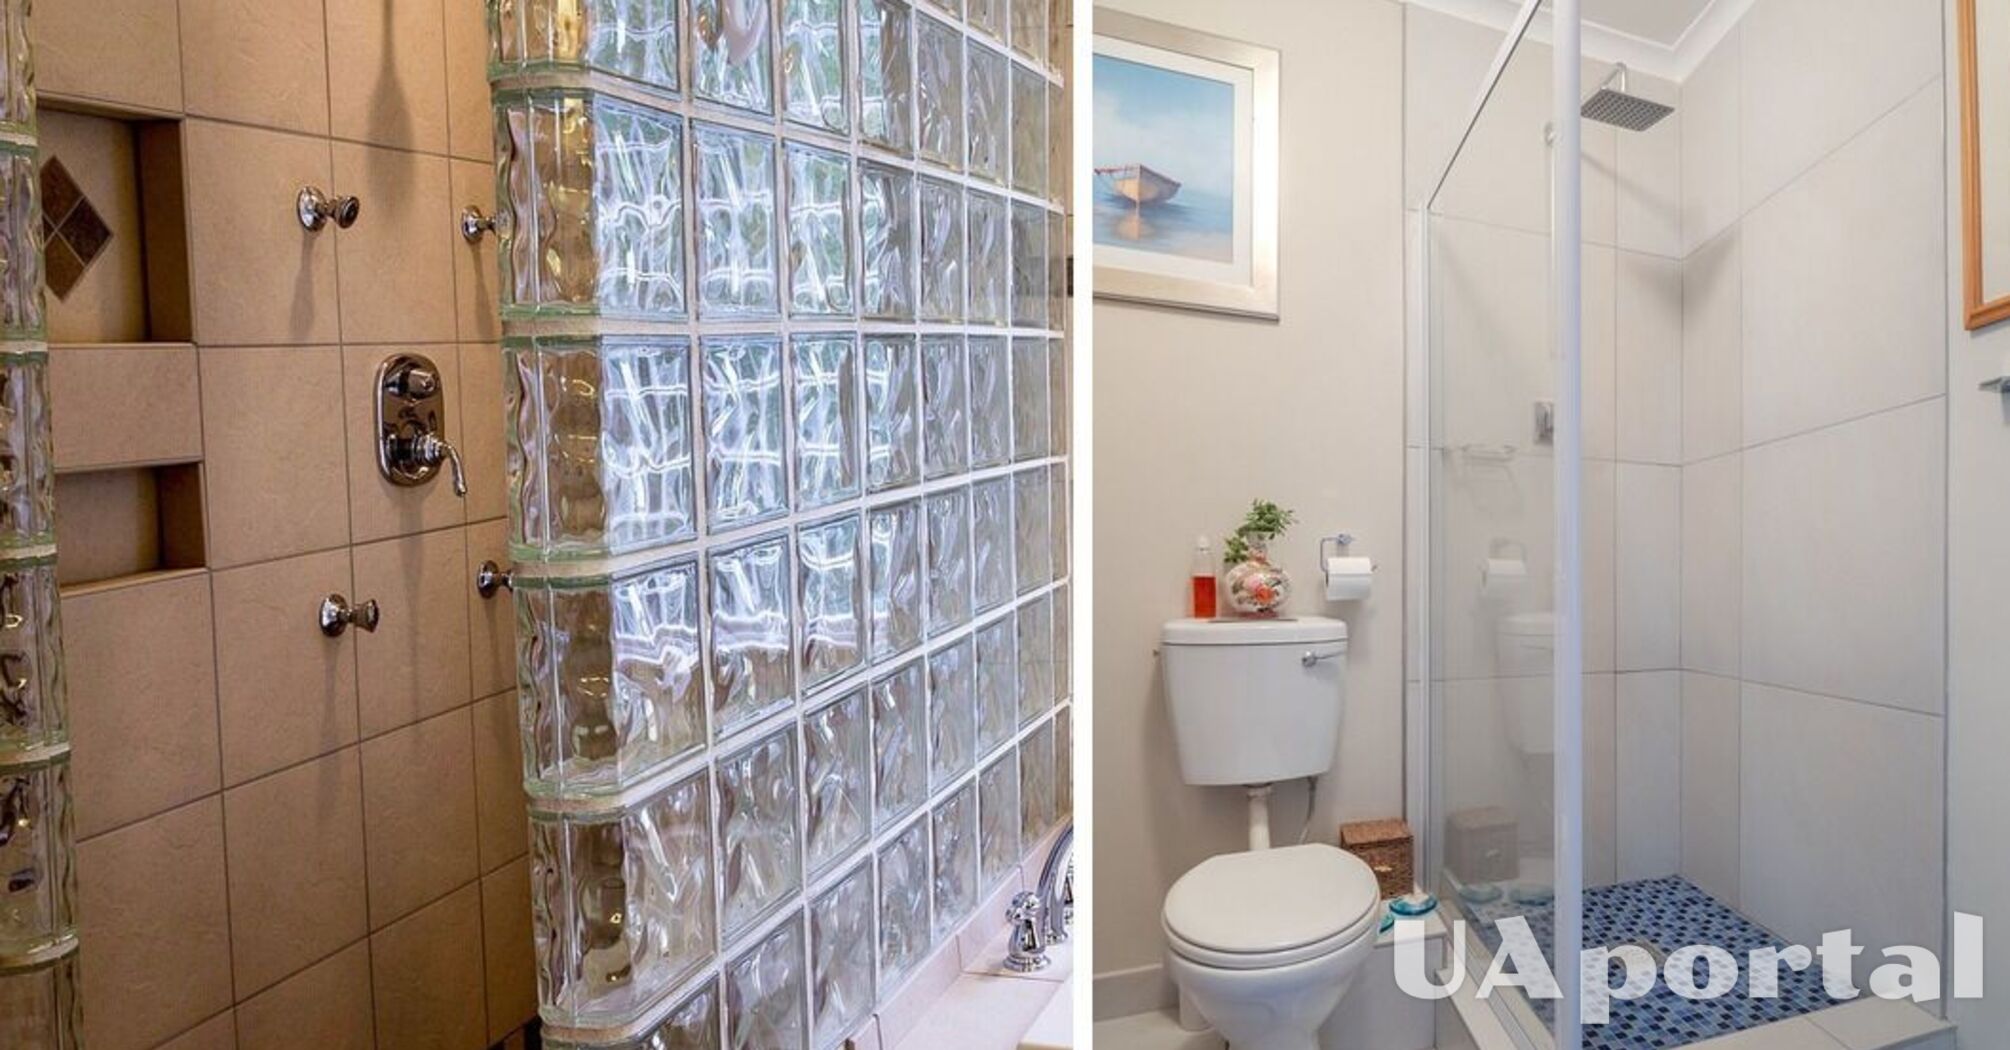 Eksperci wyjaśniają, dlaczego szklane drzwi pod prysznicem mogą pękać: bezpieczeństwo jest najważniejsze